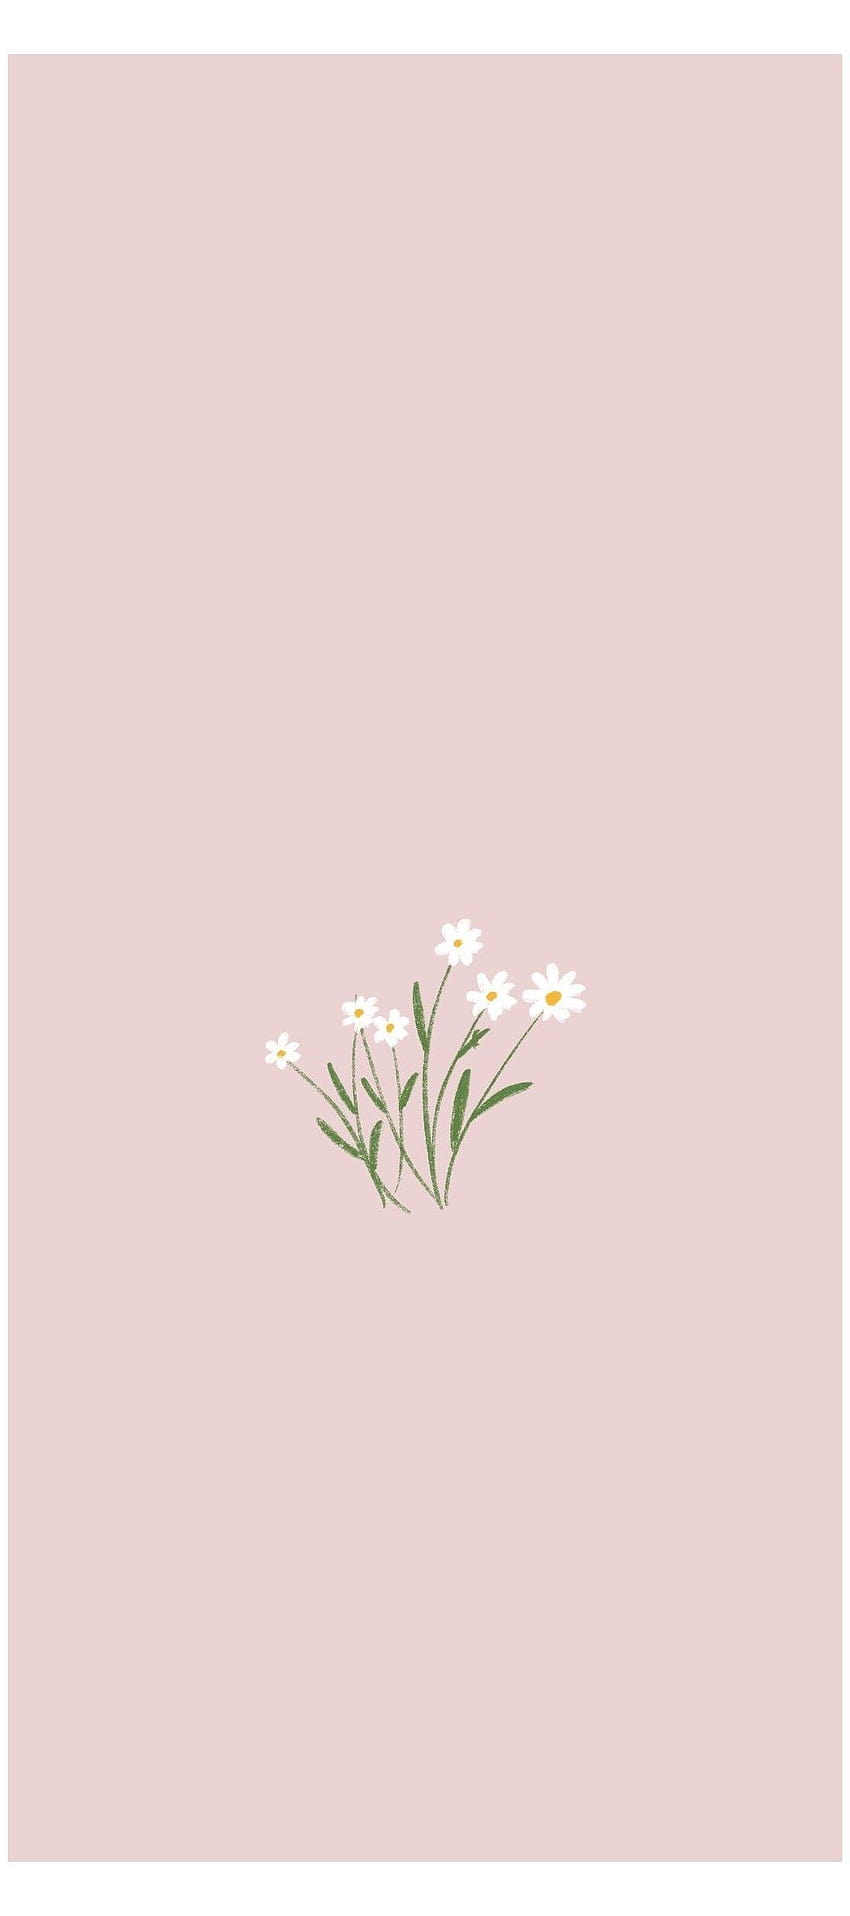 Muốn tìm kiếm hình nền iPhone hoa đơn giản mùa xuân cho điện thoại của bạn? Tại sao không thử xem các tùy chọn tuyệt đẹp trên trang web Pxfuel? Với hình nền hoa đơn giản, tinh tế và hài hòa, bạn sẽ không thể không yêu thích chúng! 